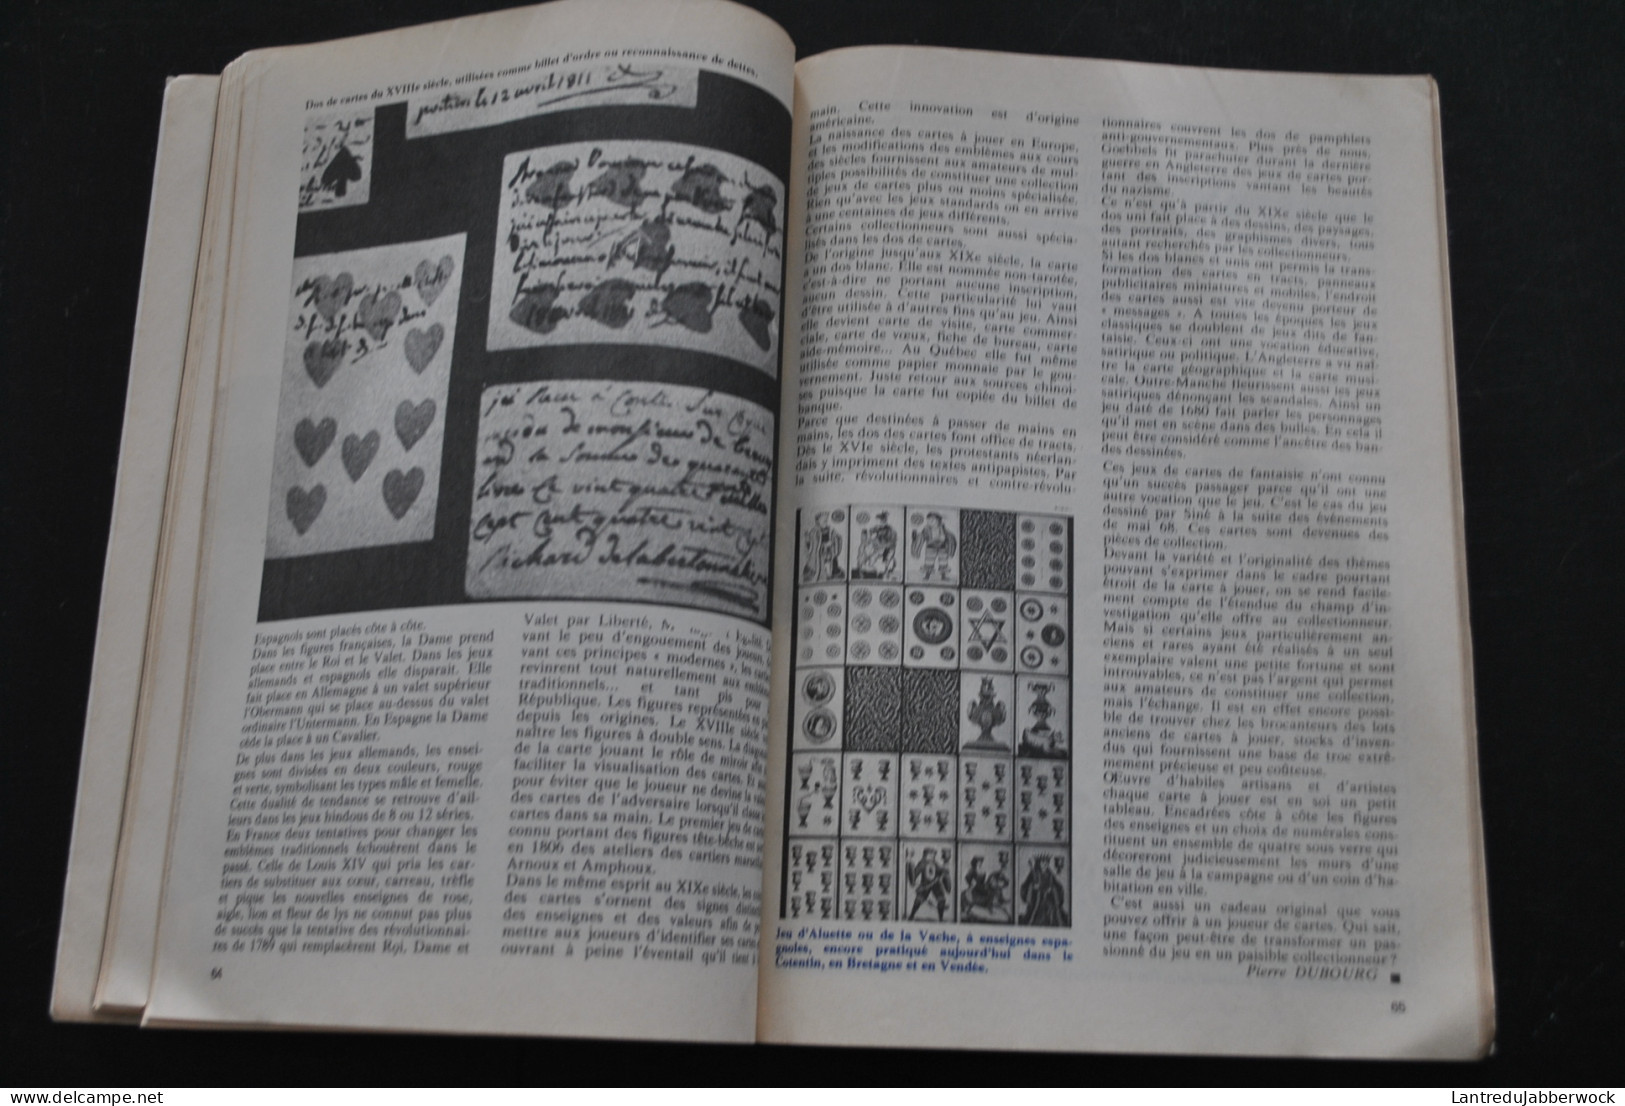 Bricole Et Brocante Mai 1975 Numéro 31 Cartes De Collection (Meubles Picard Tapis D'Orient Maison Solognote Lozes) Jeu - Playing Cards (classic)